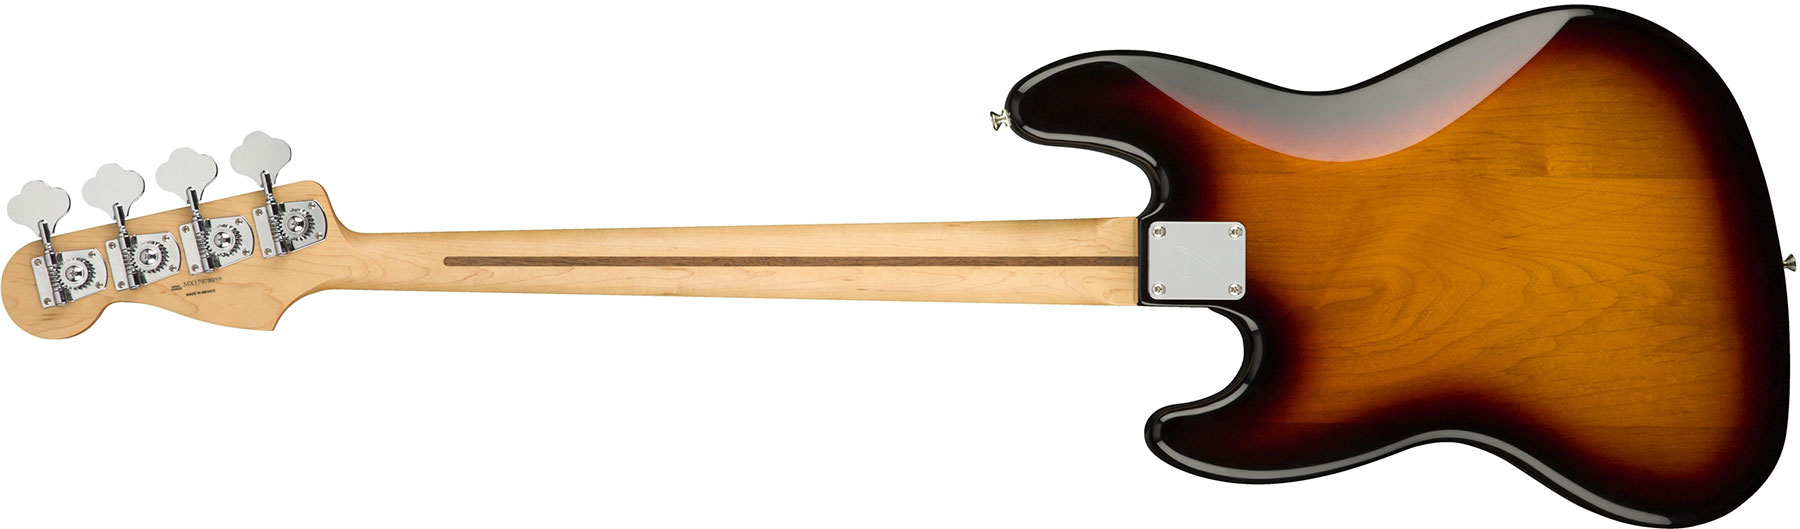 Fender Jazz Bass Player Fretless Mex Pf - 3-color Sunburst - Solid body elektrische bas - Variation 1